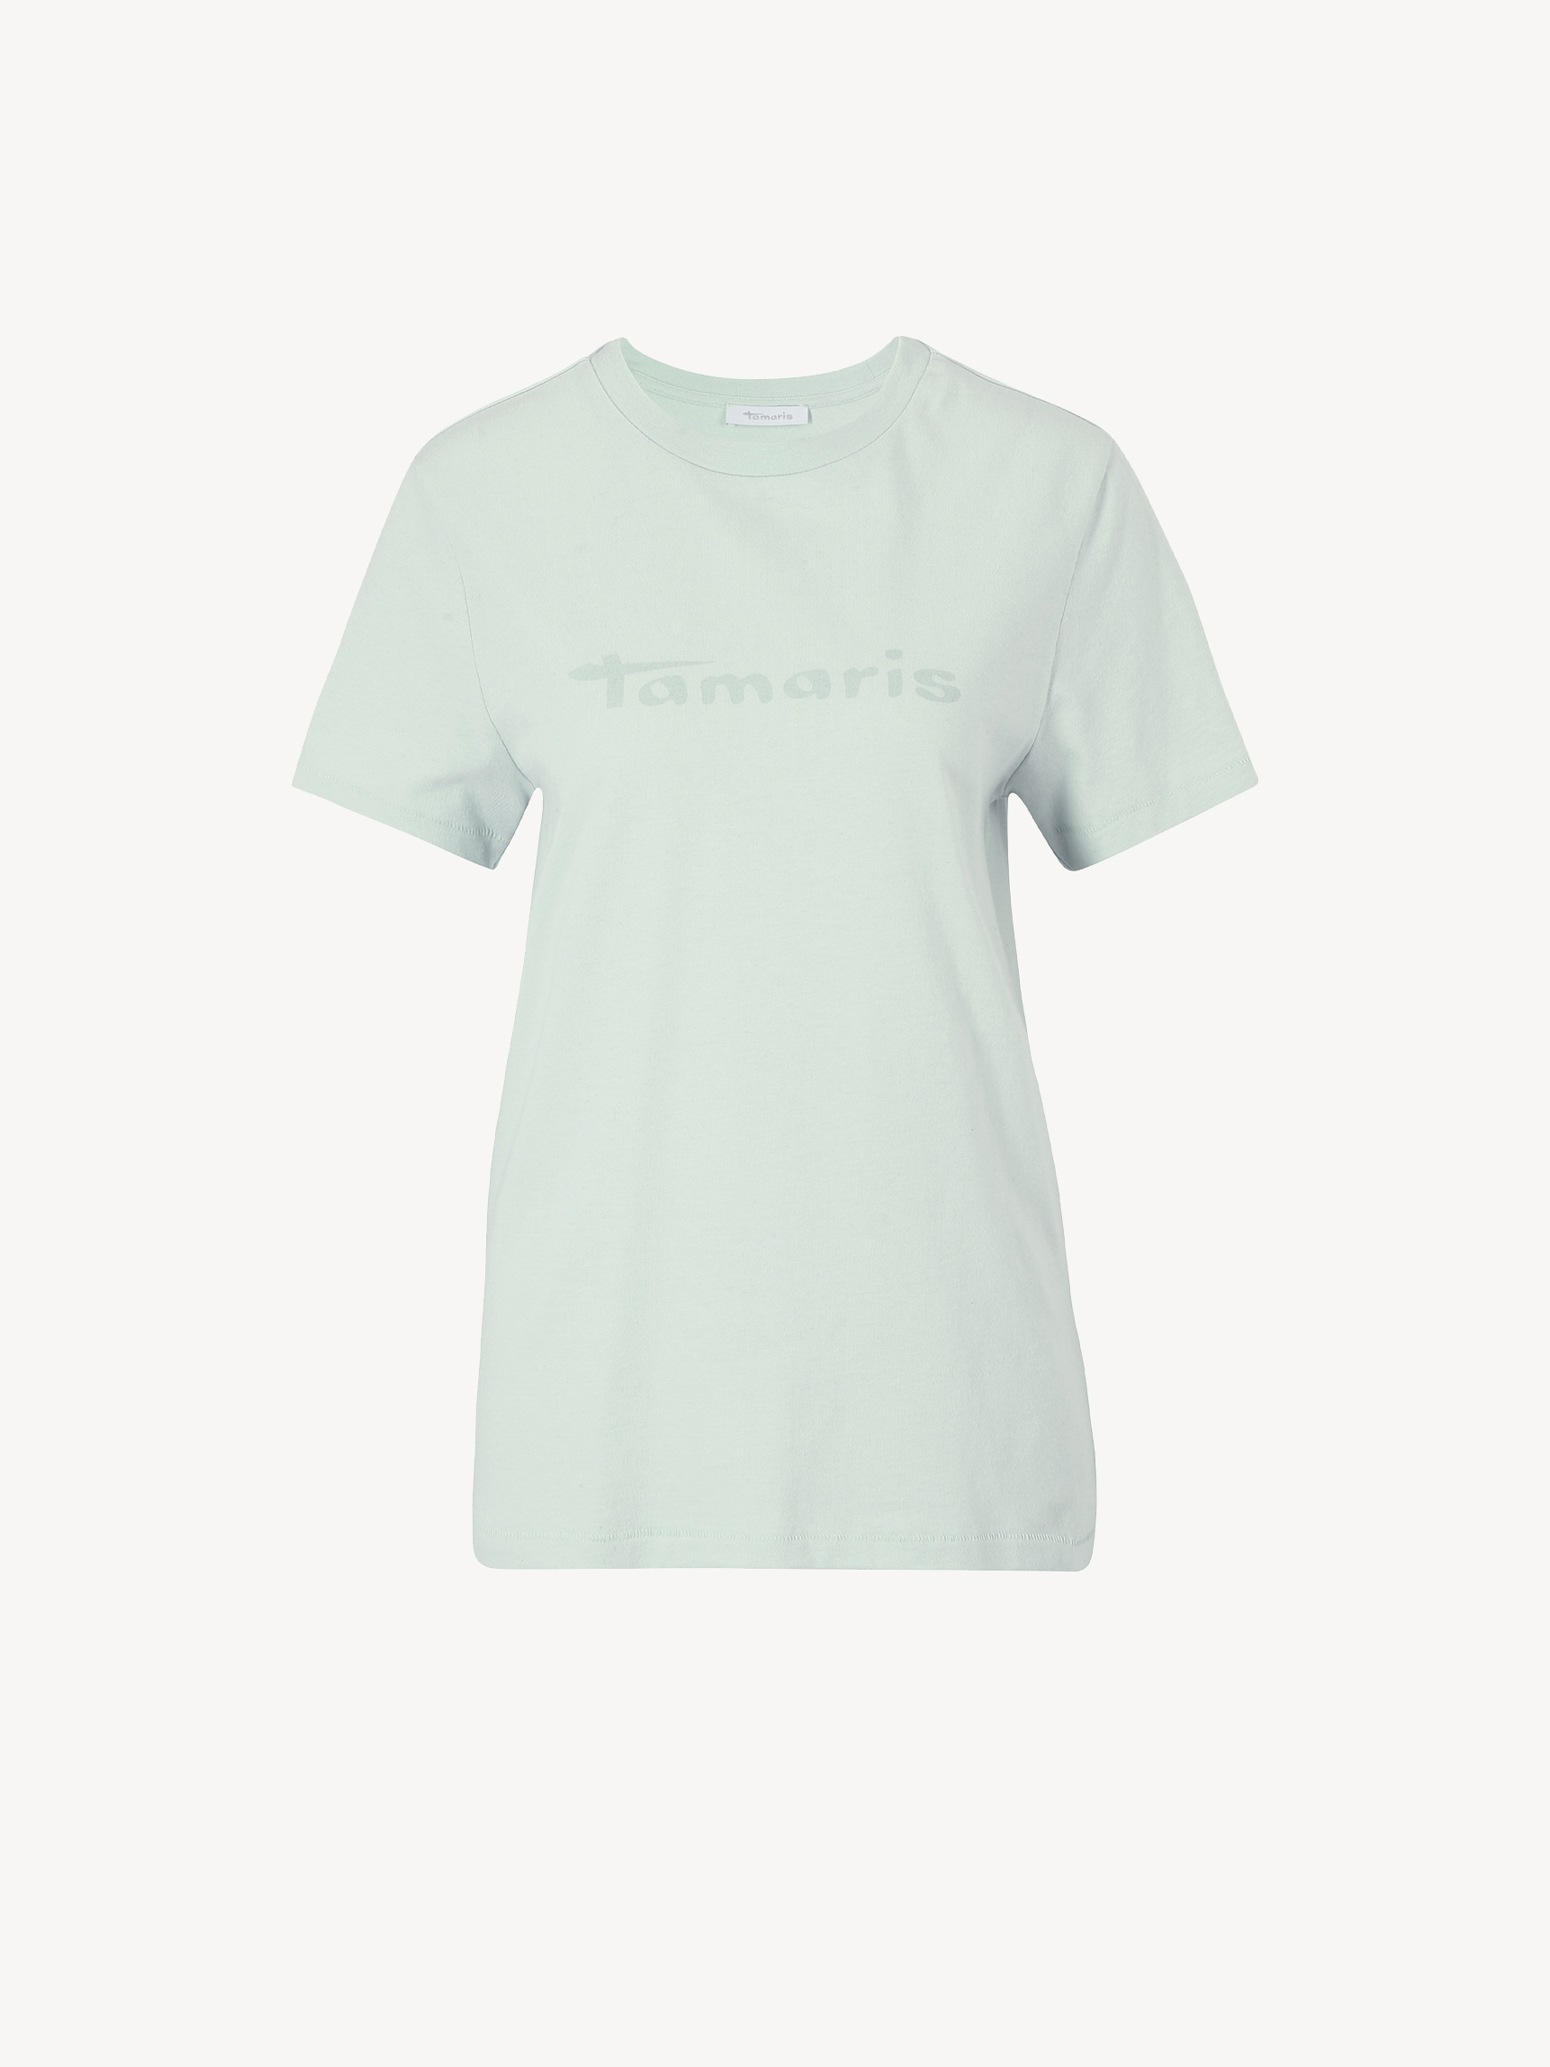 Buy Tamaris Shirts & online now! Tops